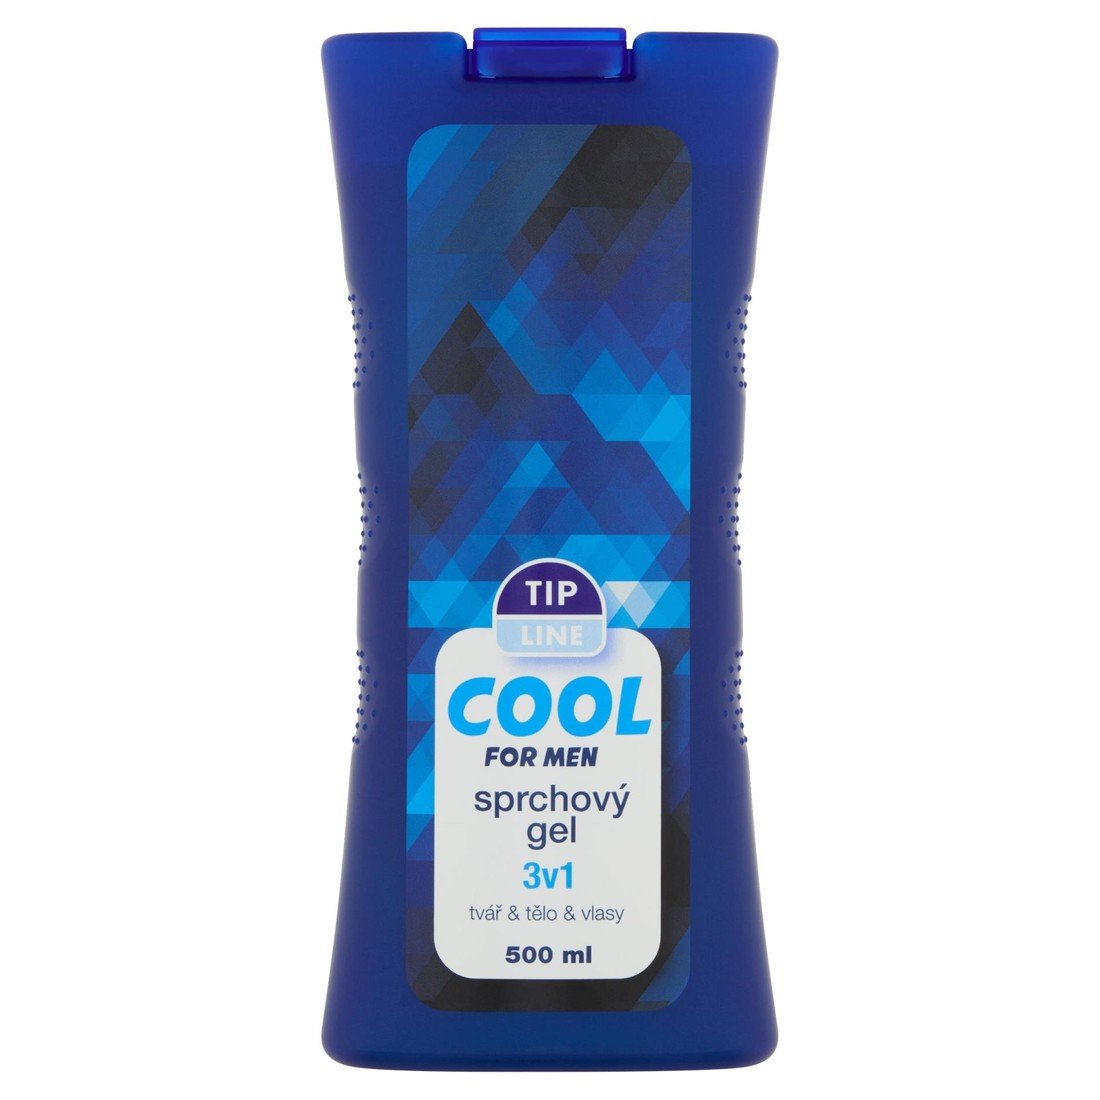 Tip Line Sprchový gel Tip line - pro muže Cool, 500 ml